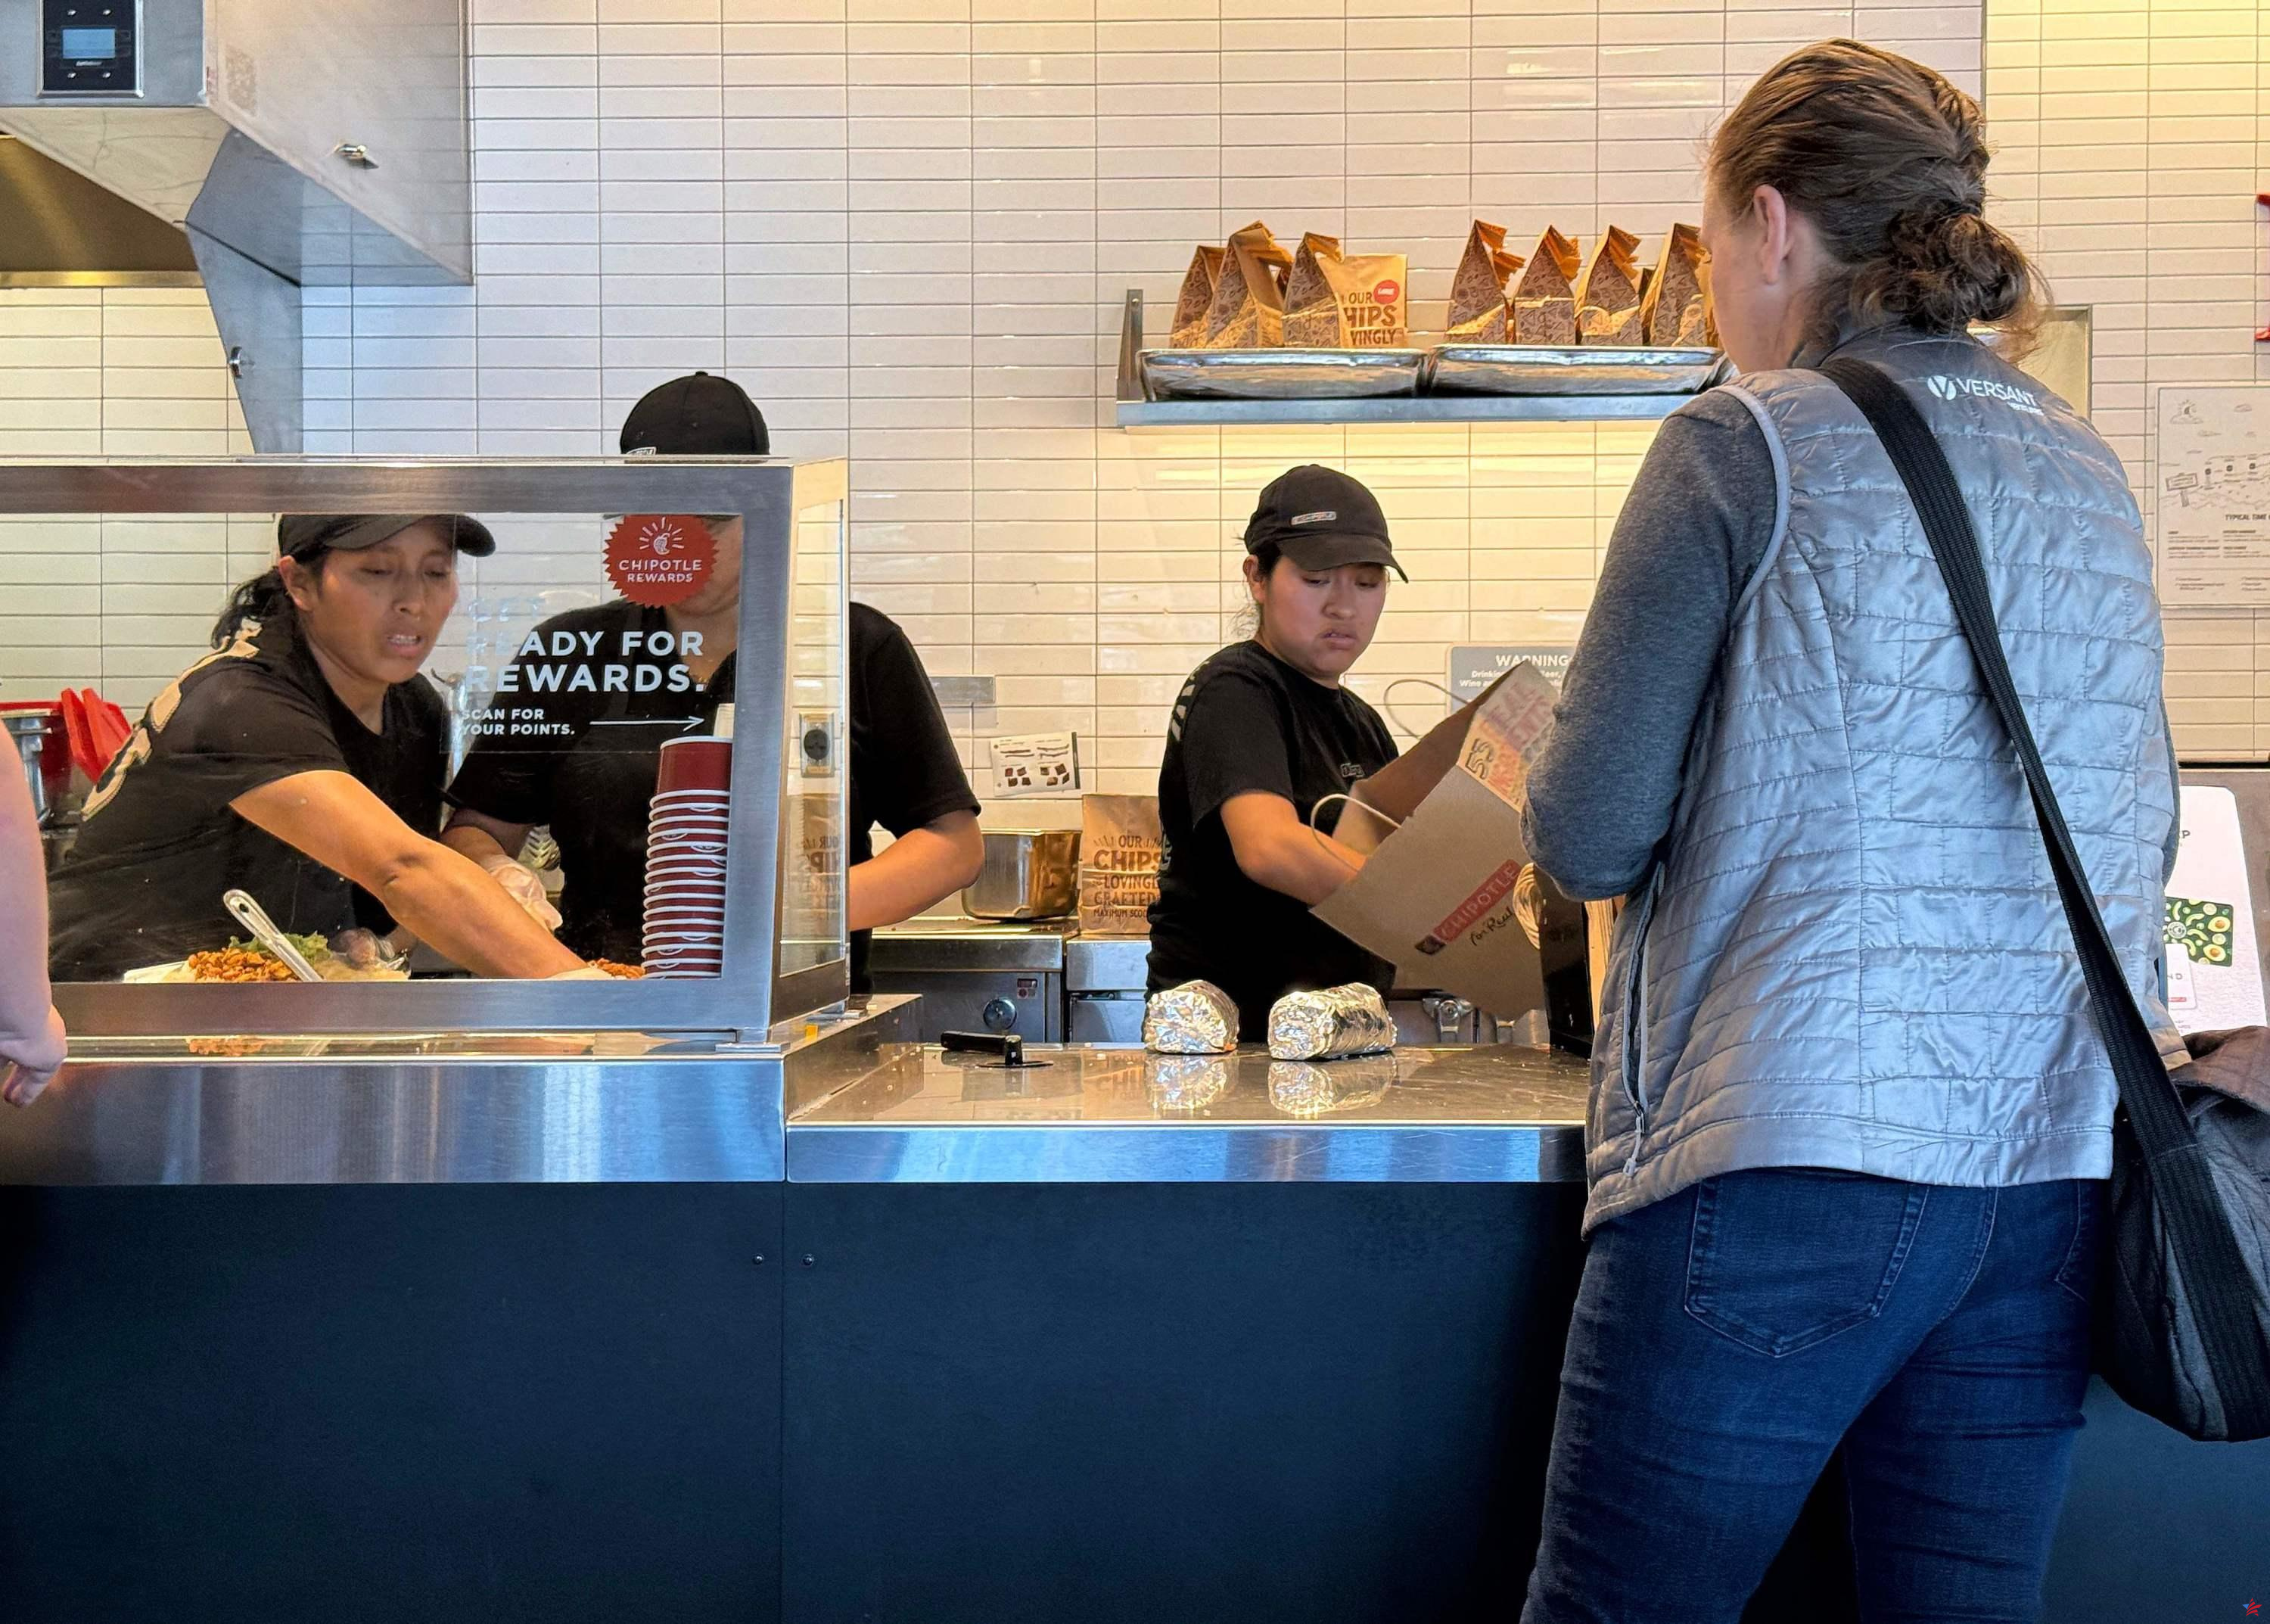 California aumenta el salario mínimo para los trabajadores de comida rápida